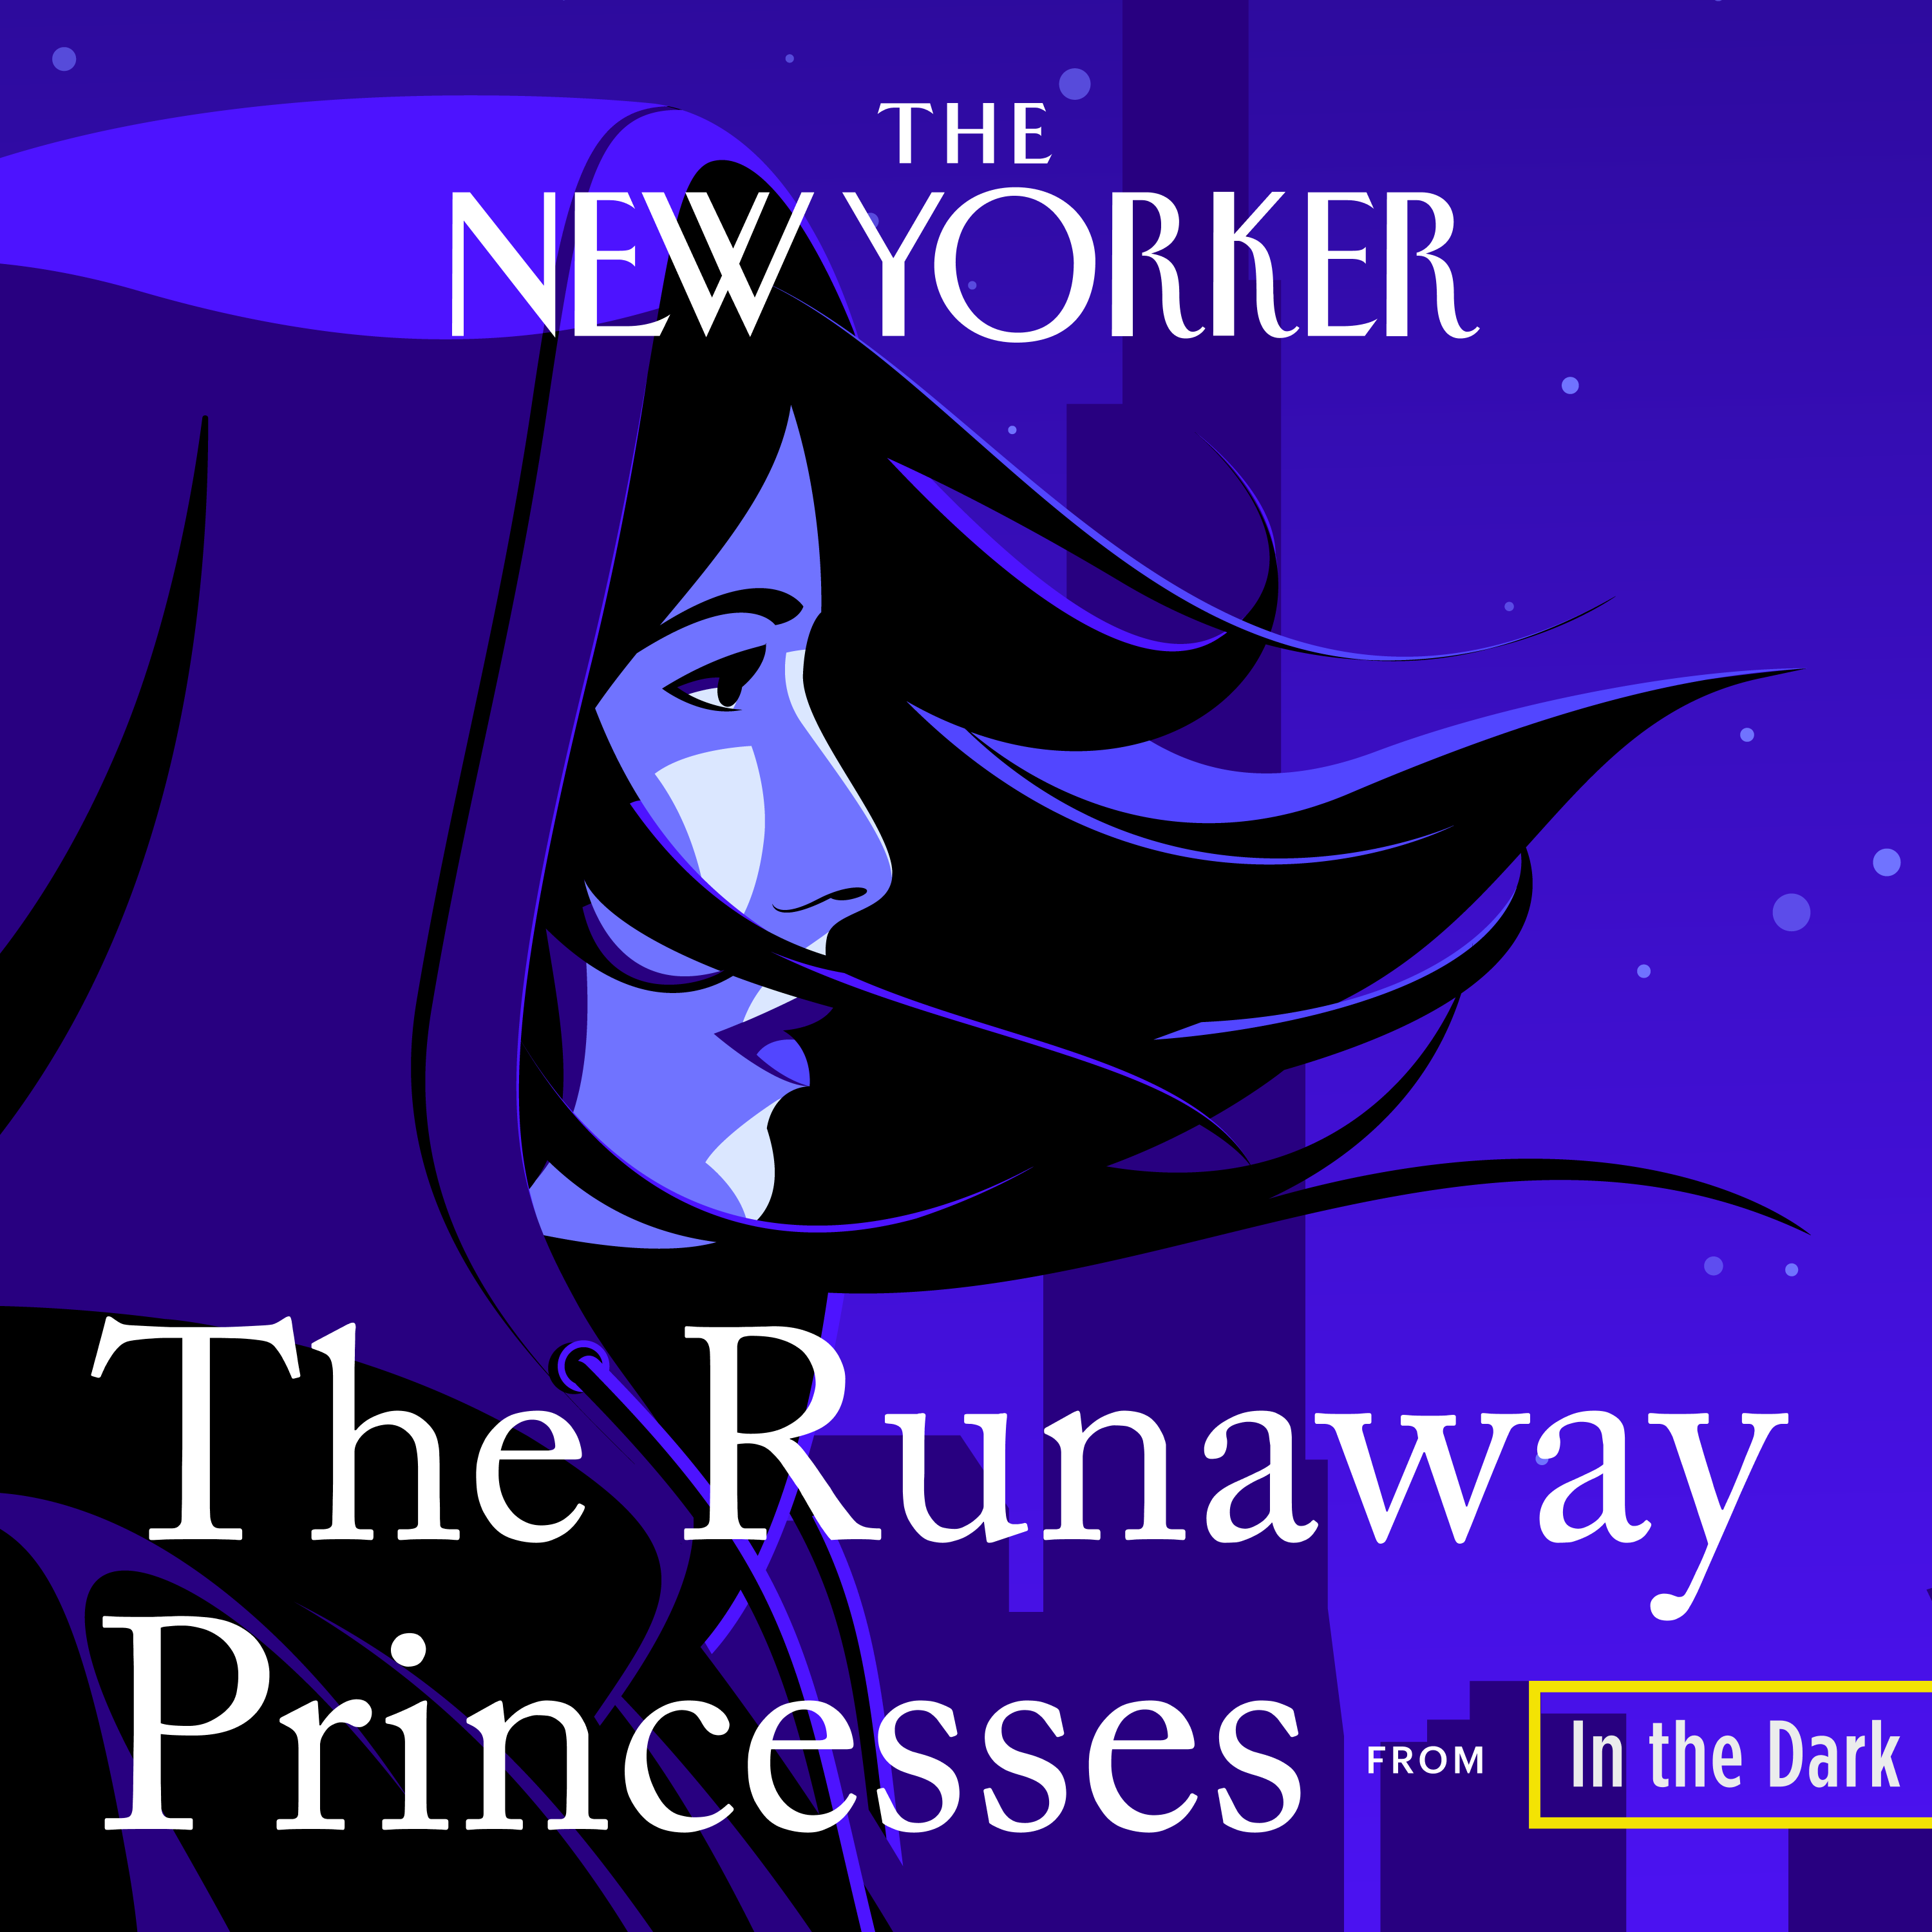 In The Dark: The Runaway Princesses